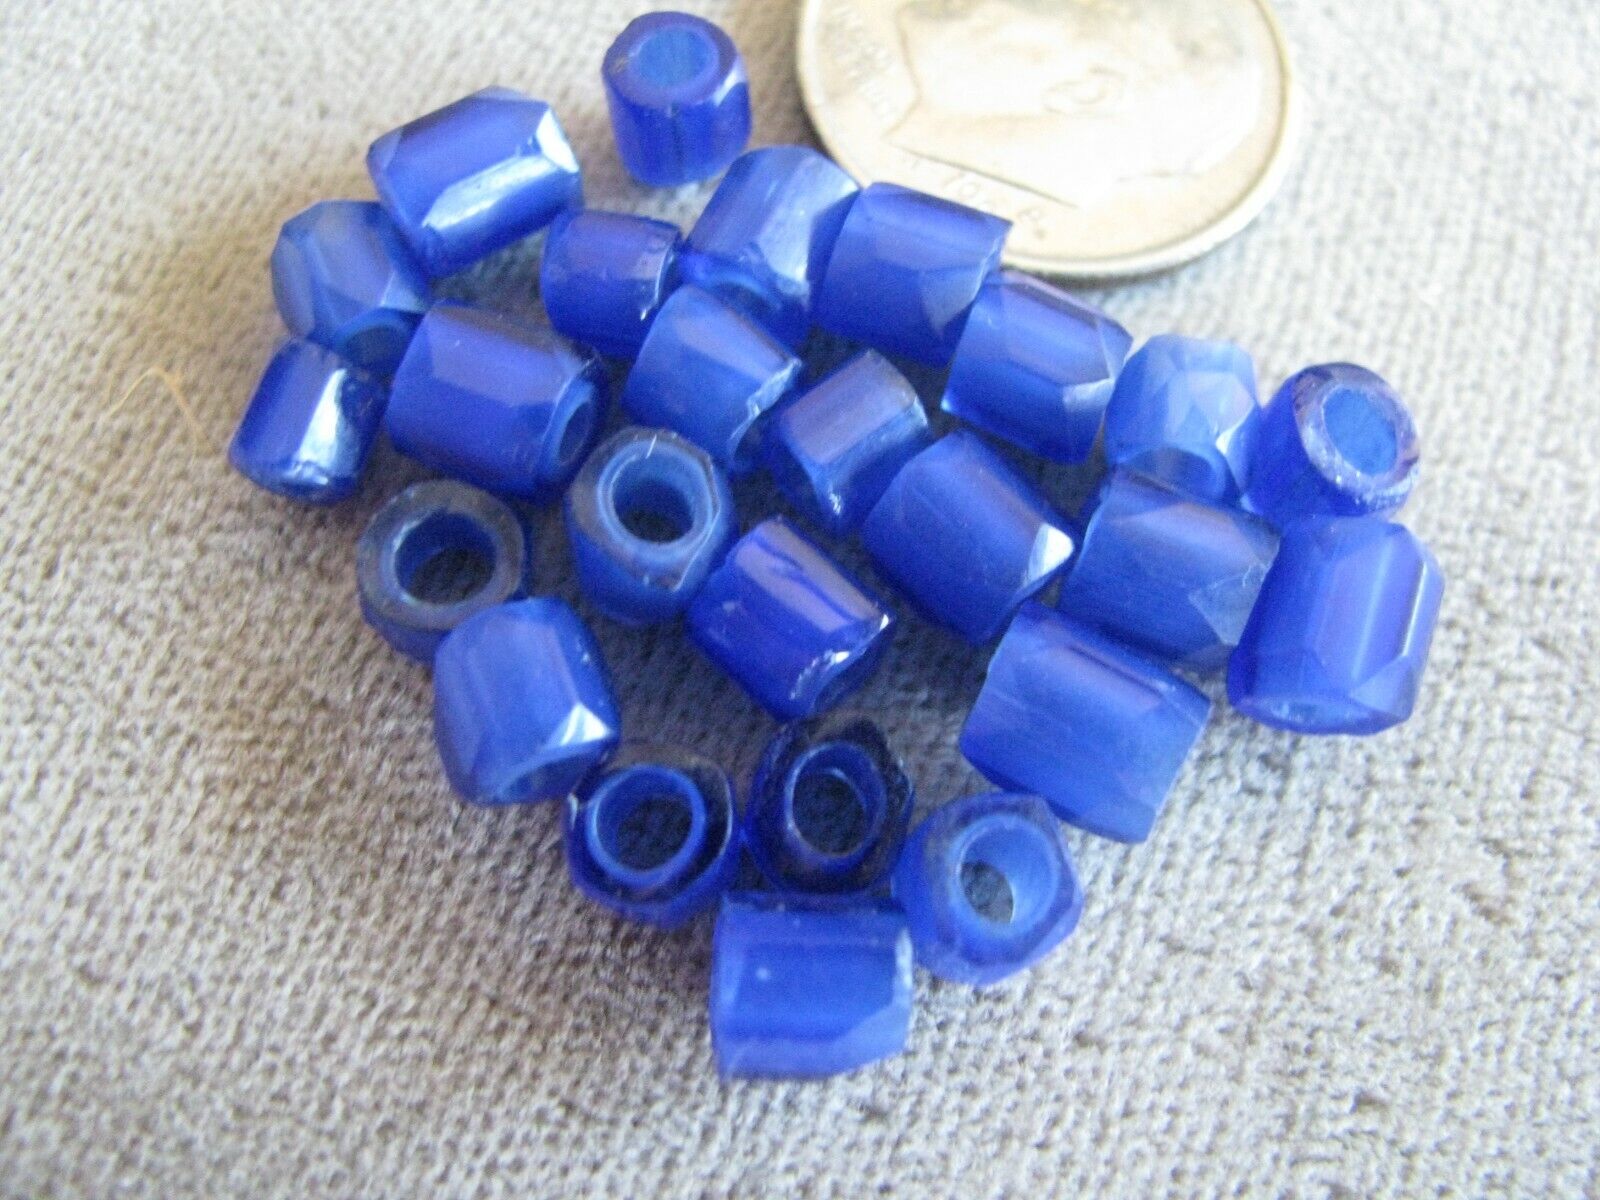 Lot of 25 Antique Czech Glass African Trade Beads Russian Blues 5mm Без бренда